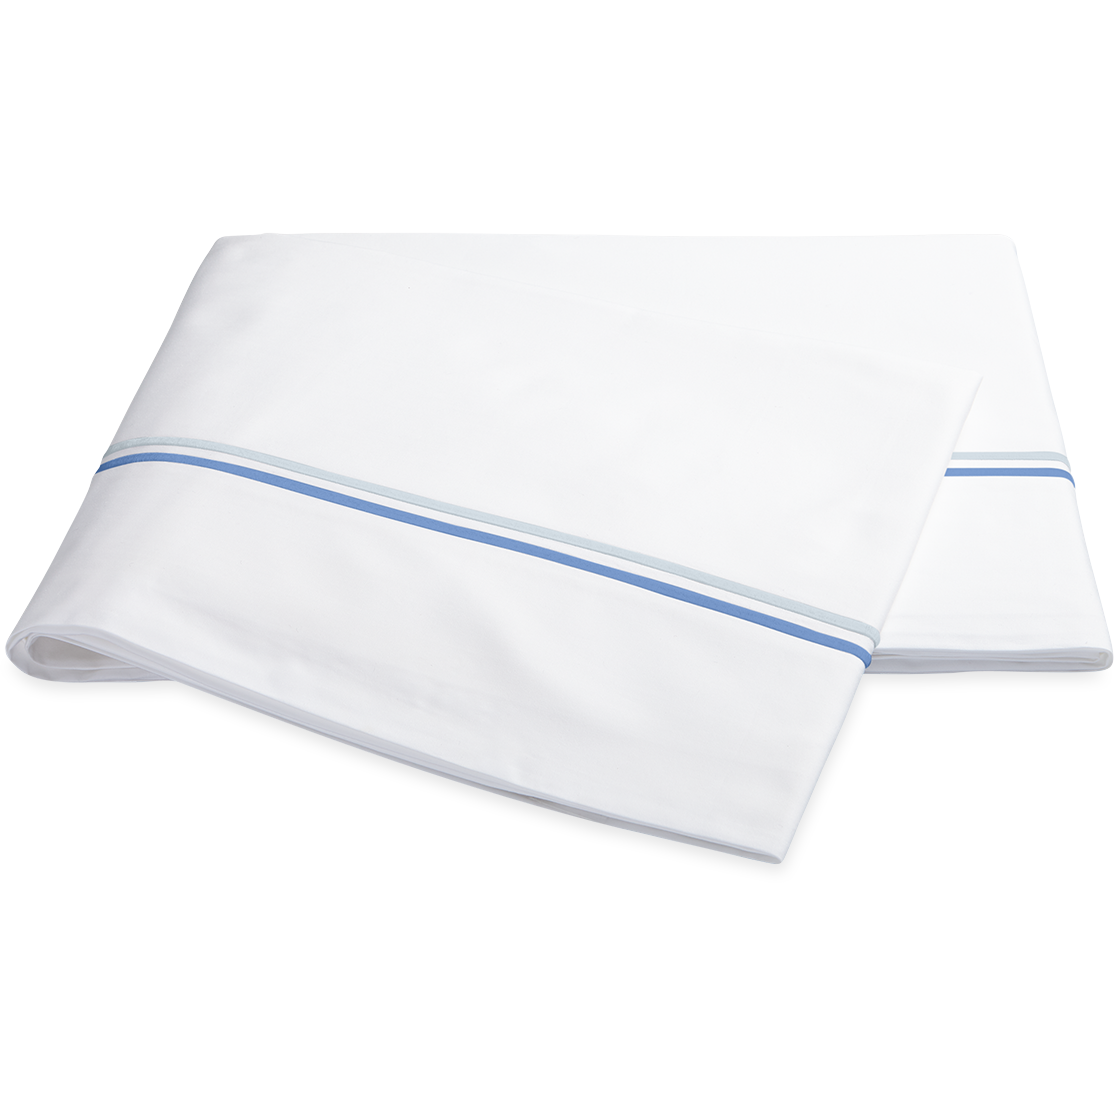 Matouk Essex High End Bed Sheet Sets Flat Sheet Azure Fine Linens